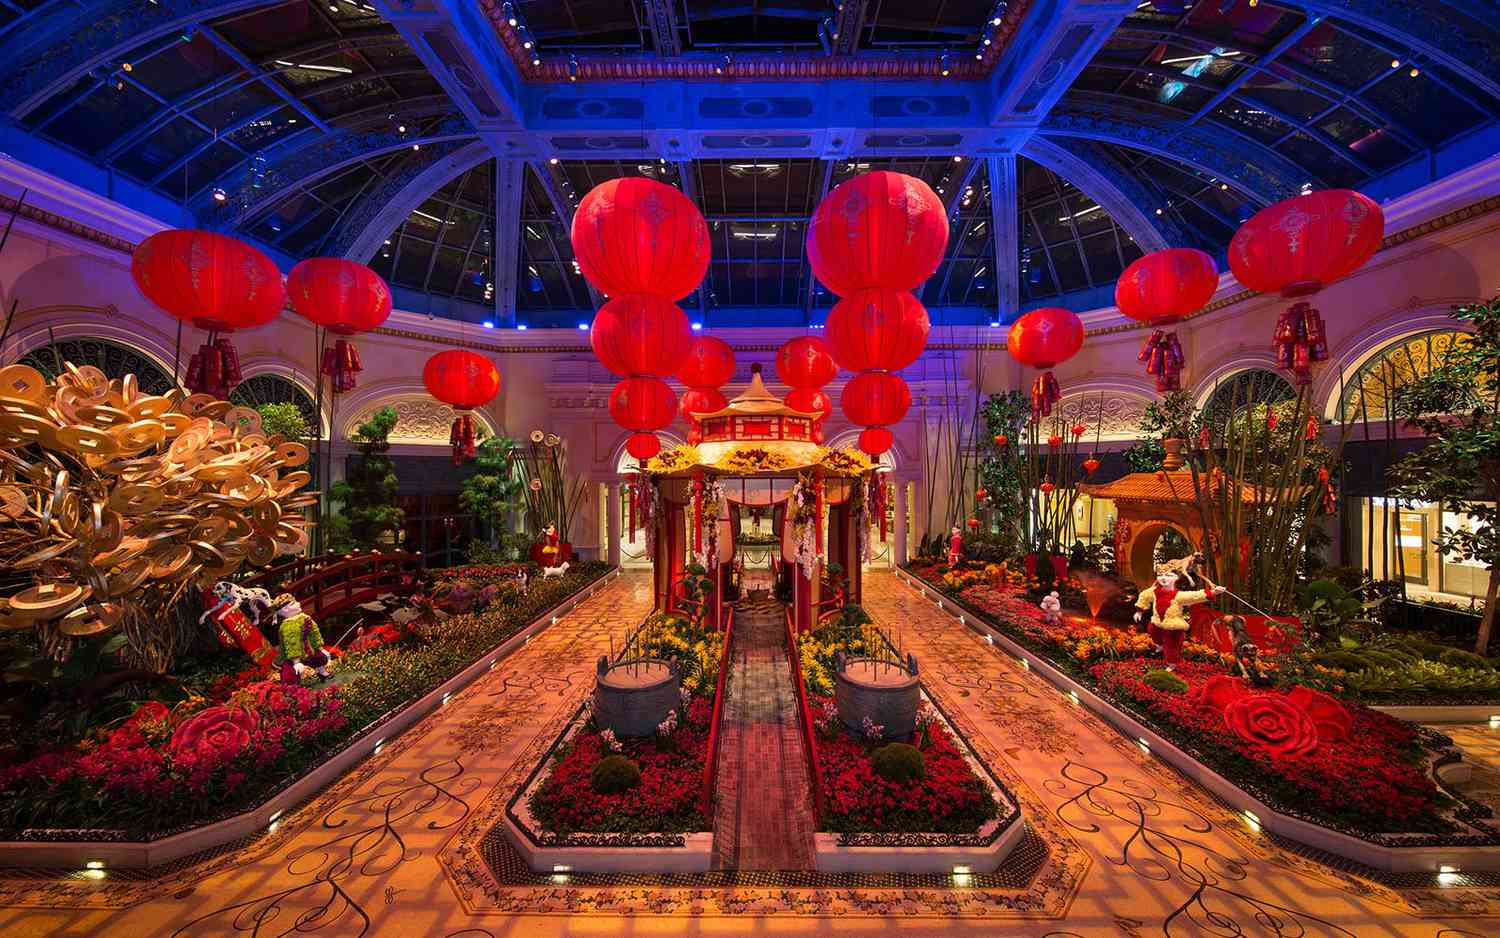 Célébration du Nouvel An chinois lunaire au Bellagio Hotel MGM Las Vegas